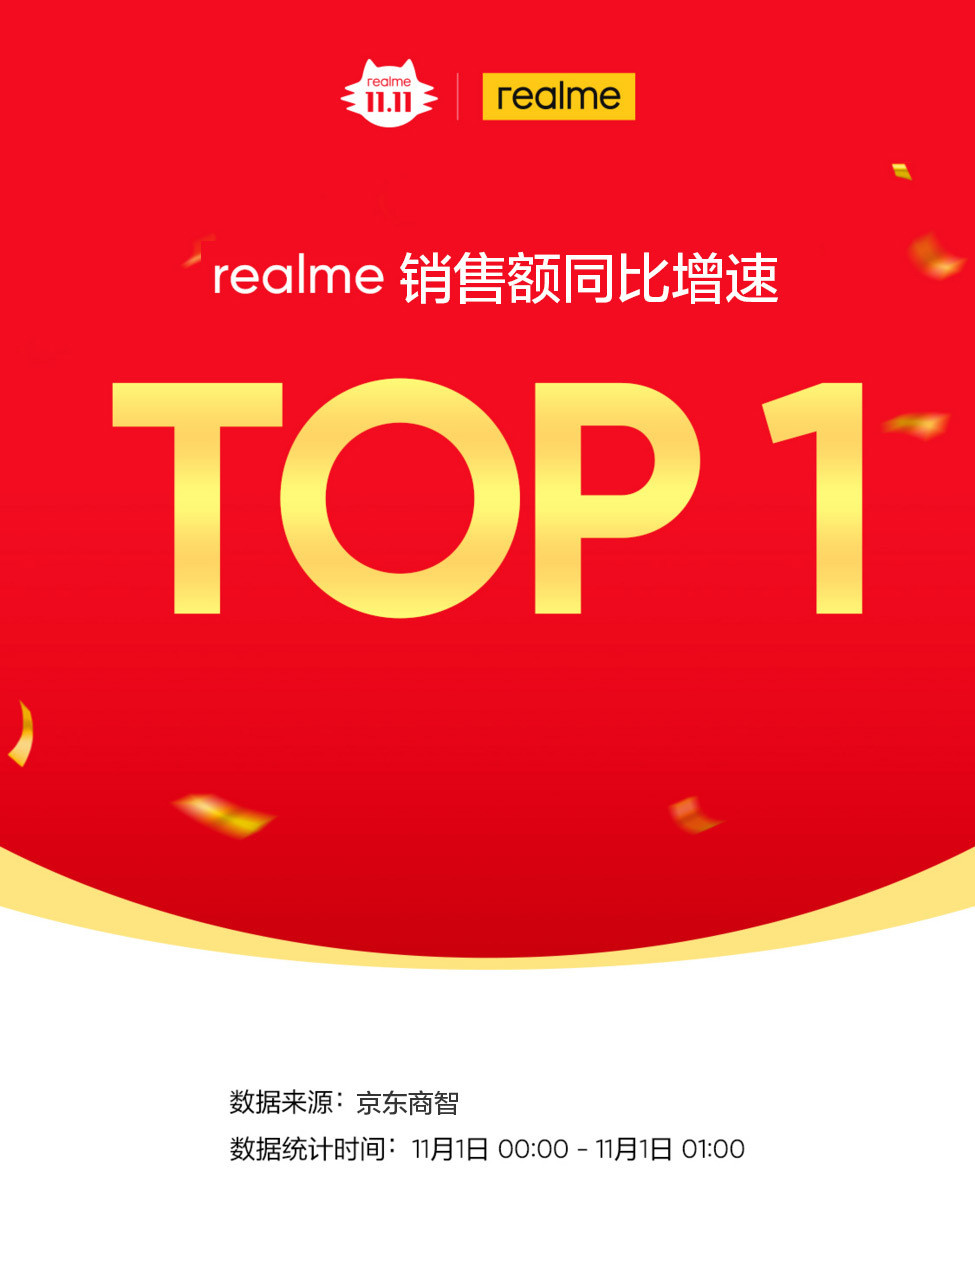 realme：中国区2021年千万销量目标，提前达成